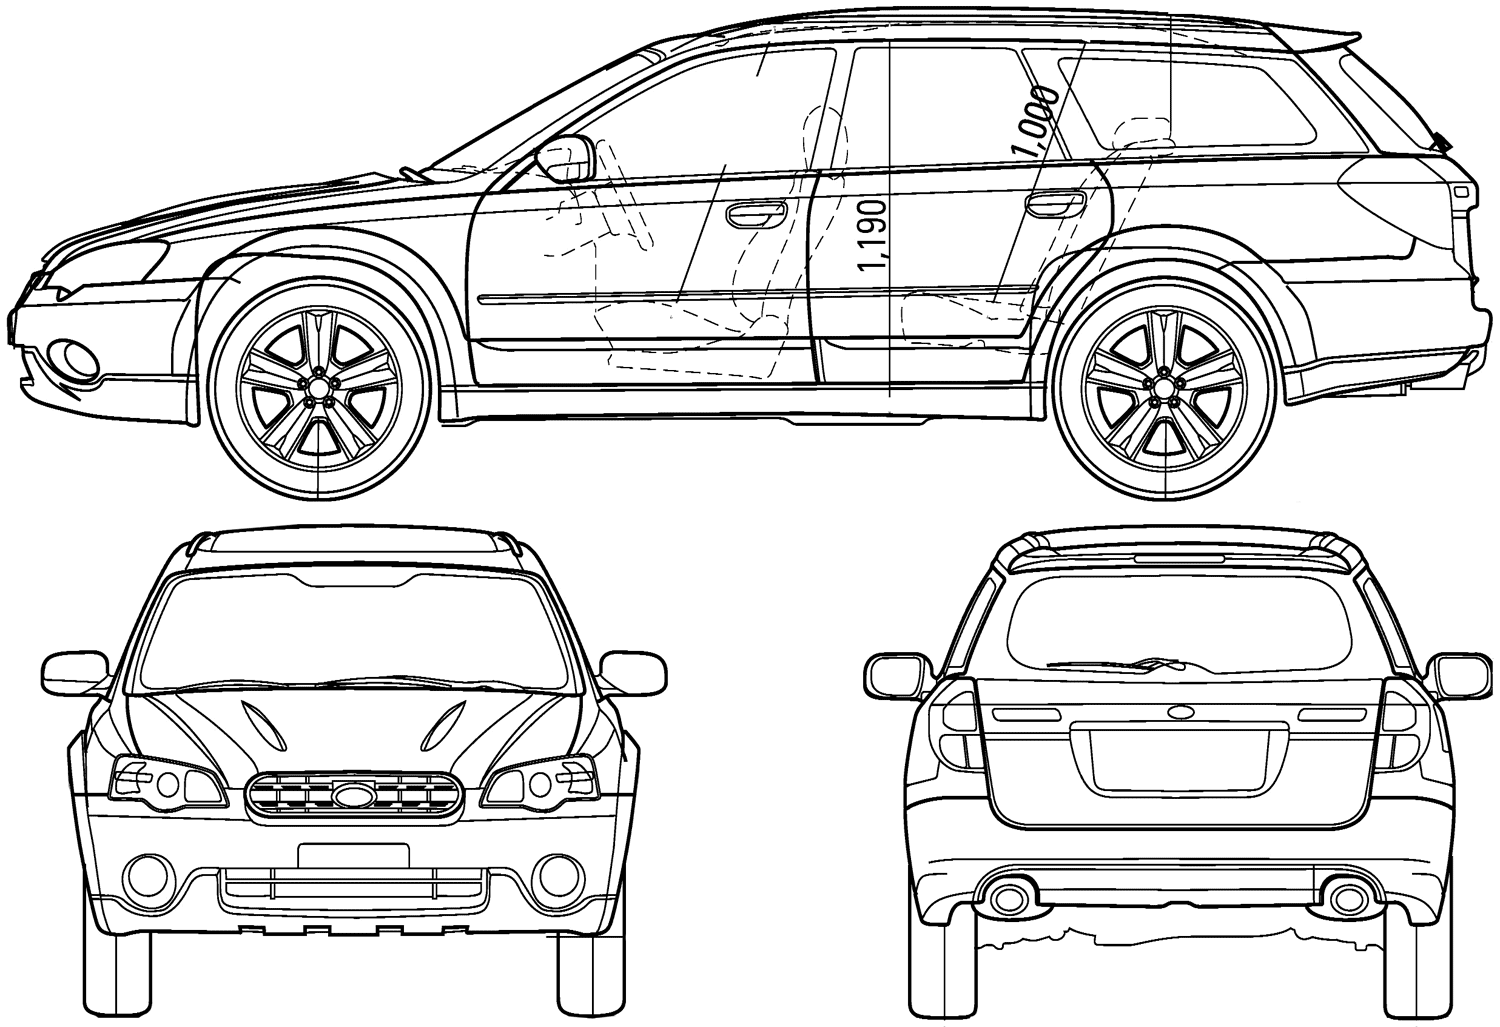 Auto Subaru Legacy Outback 2005